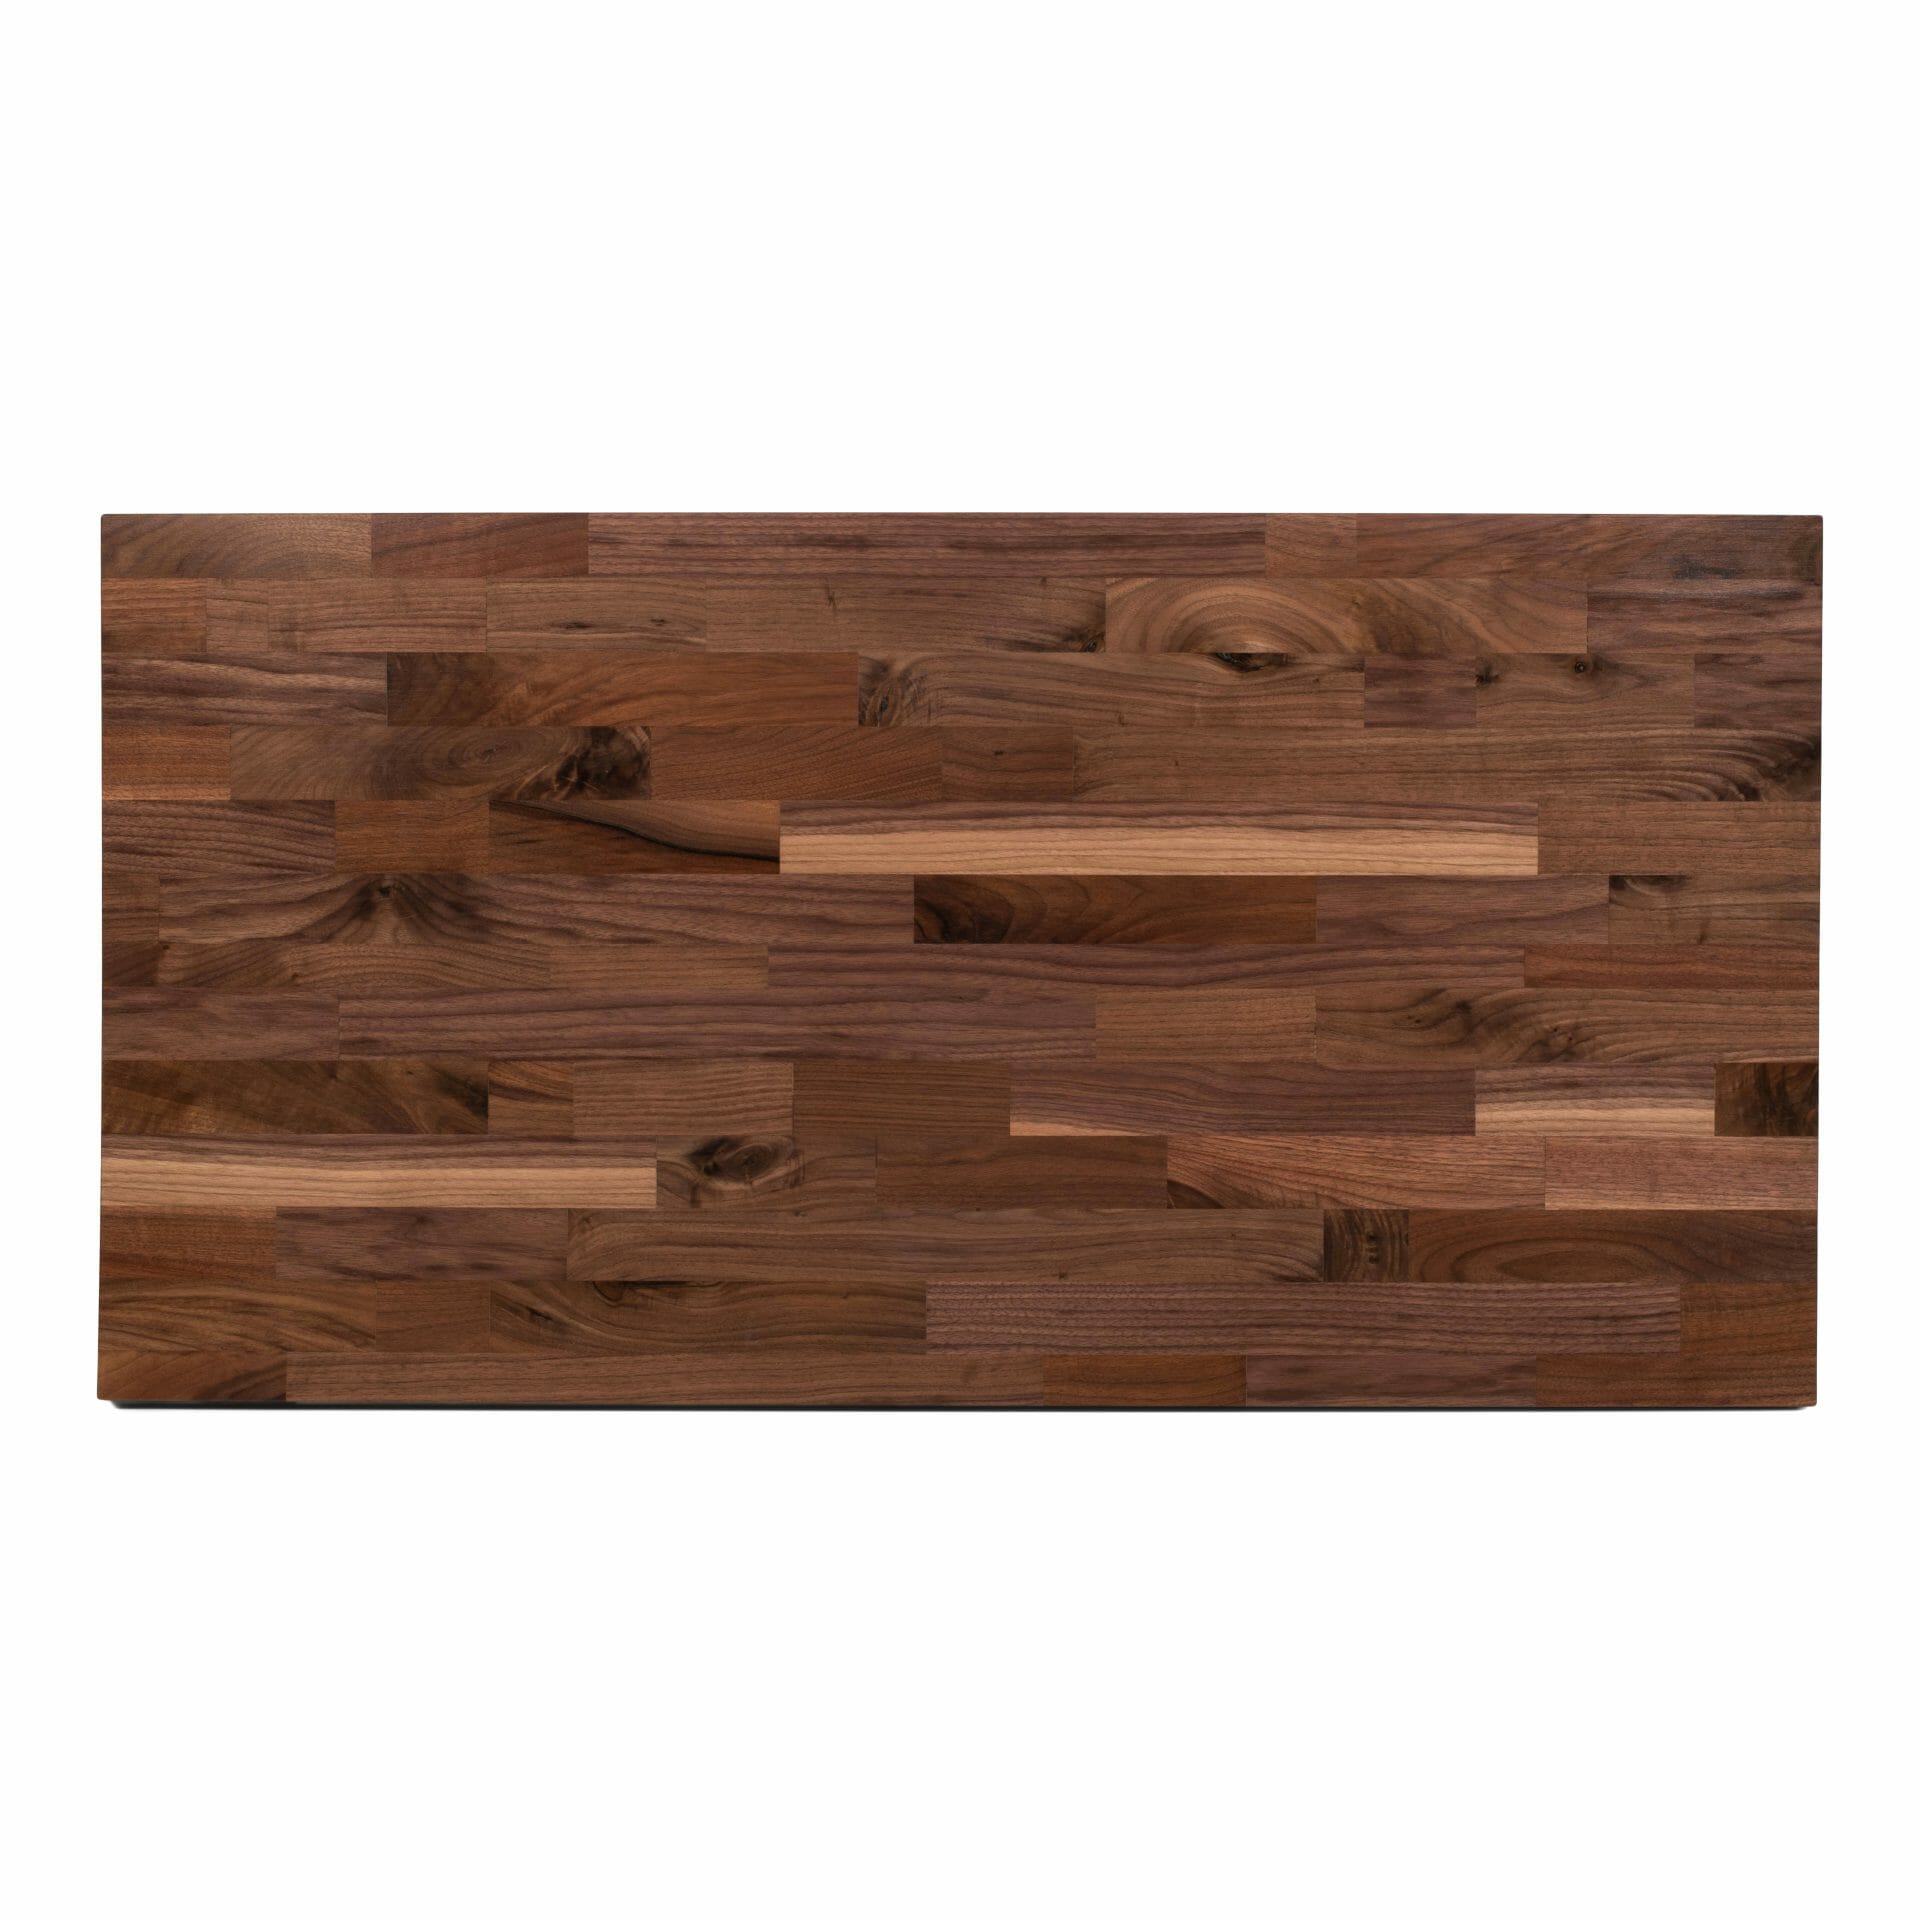 walnut wood butcher block countertop table top